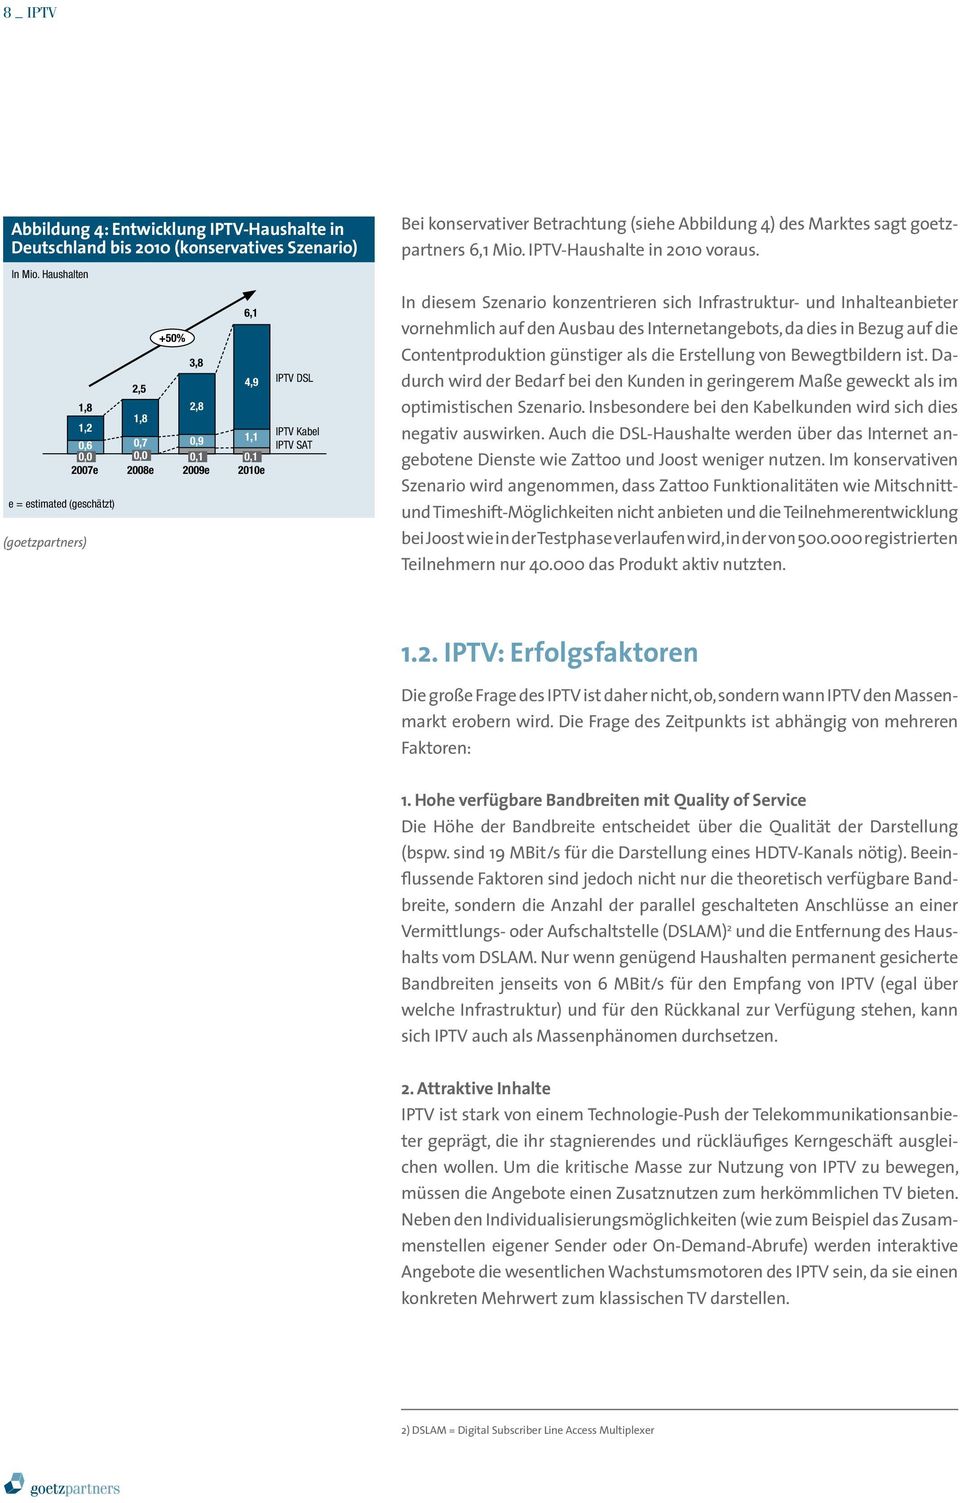 Betrachtung (siehe Abbildung 4) des Marktes sagt goetzpartners 6,1 Mio. IPTV-Haushalte in 2010 voraus.